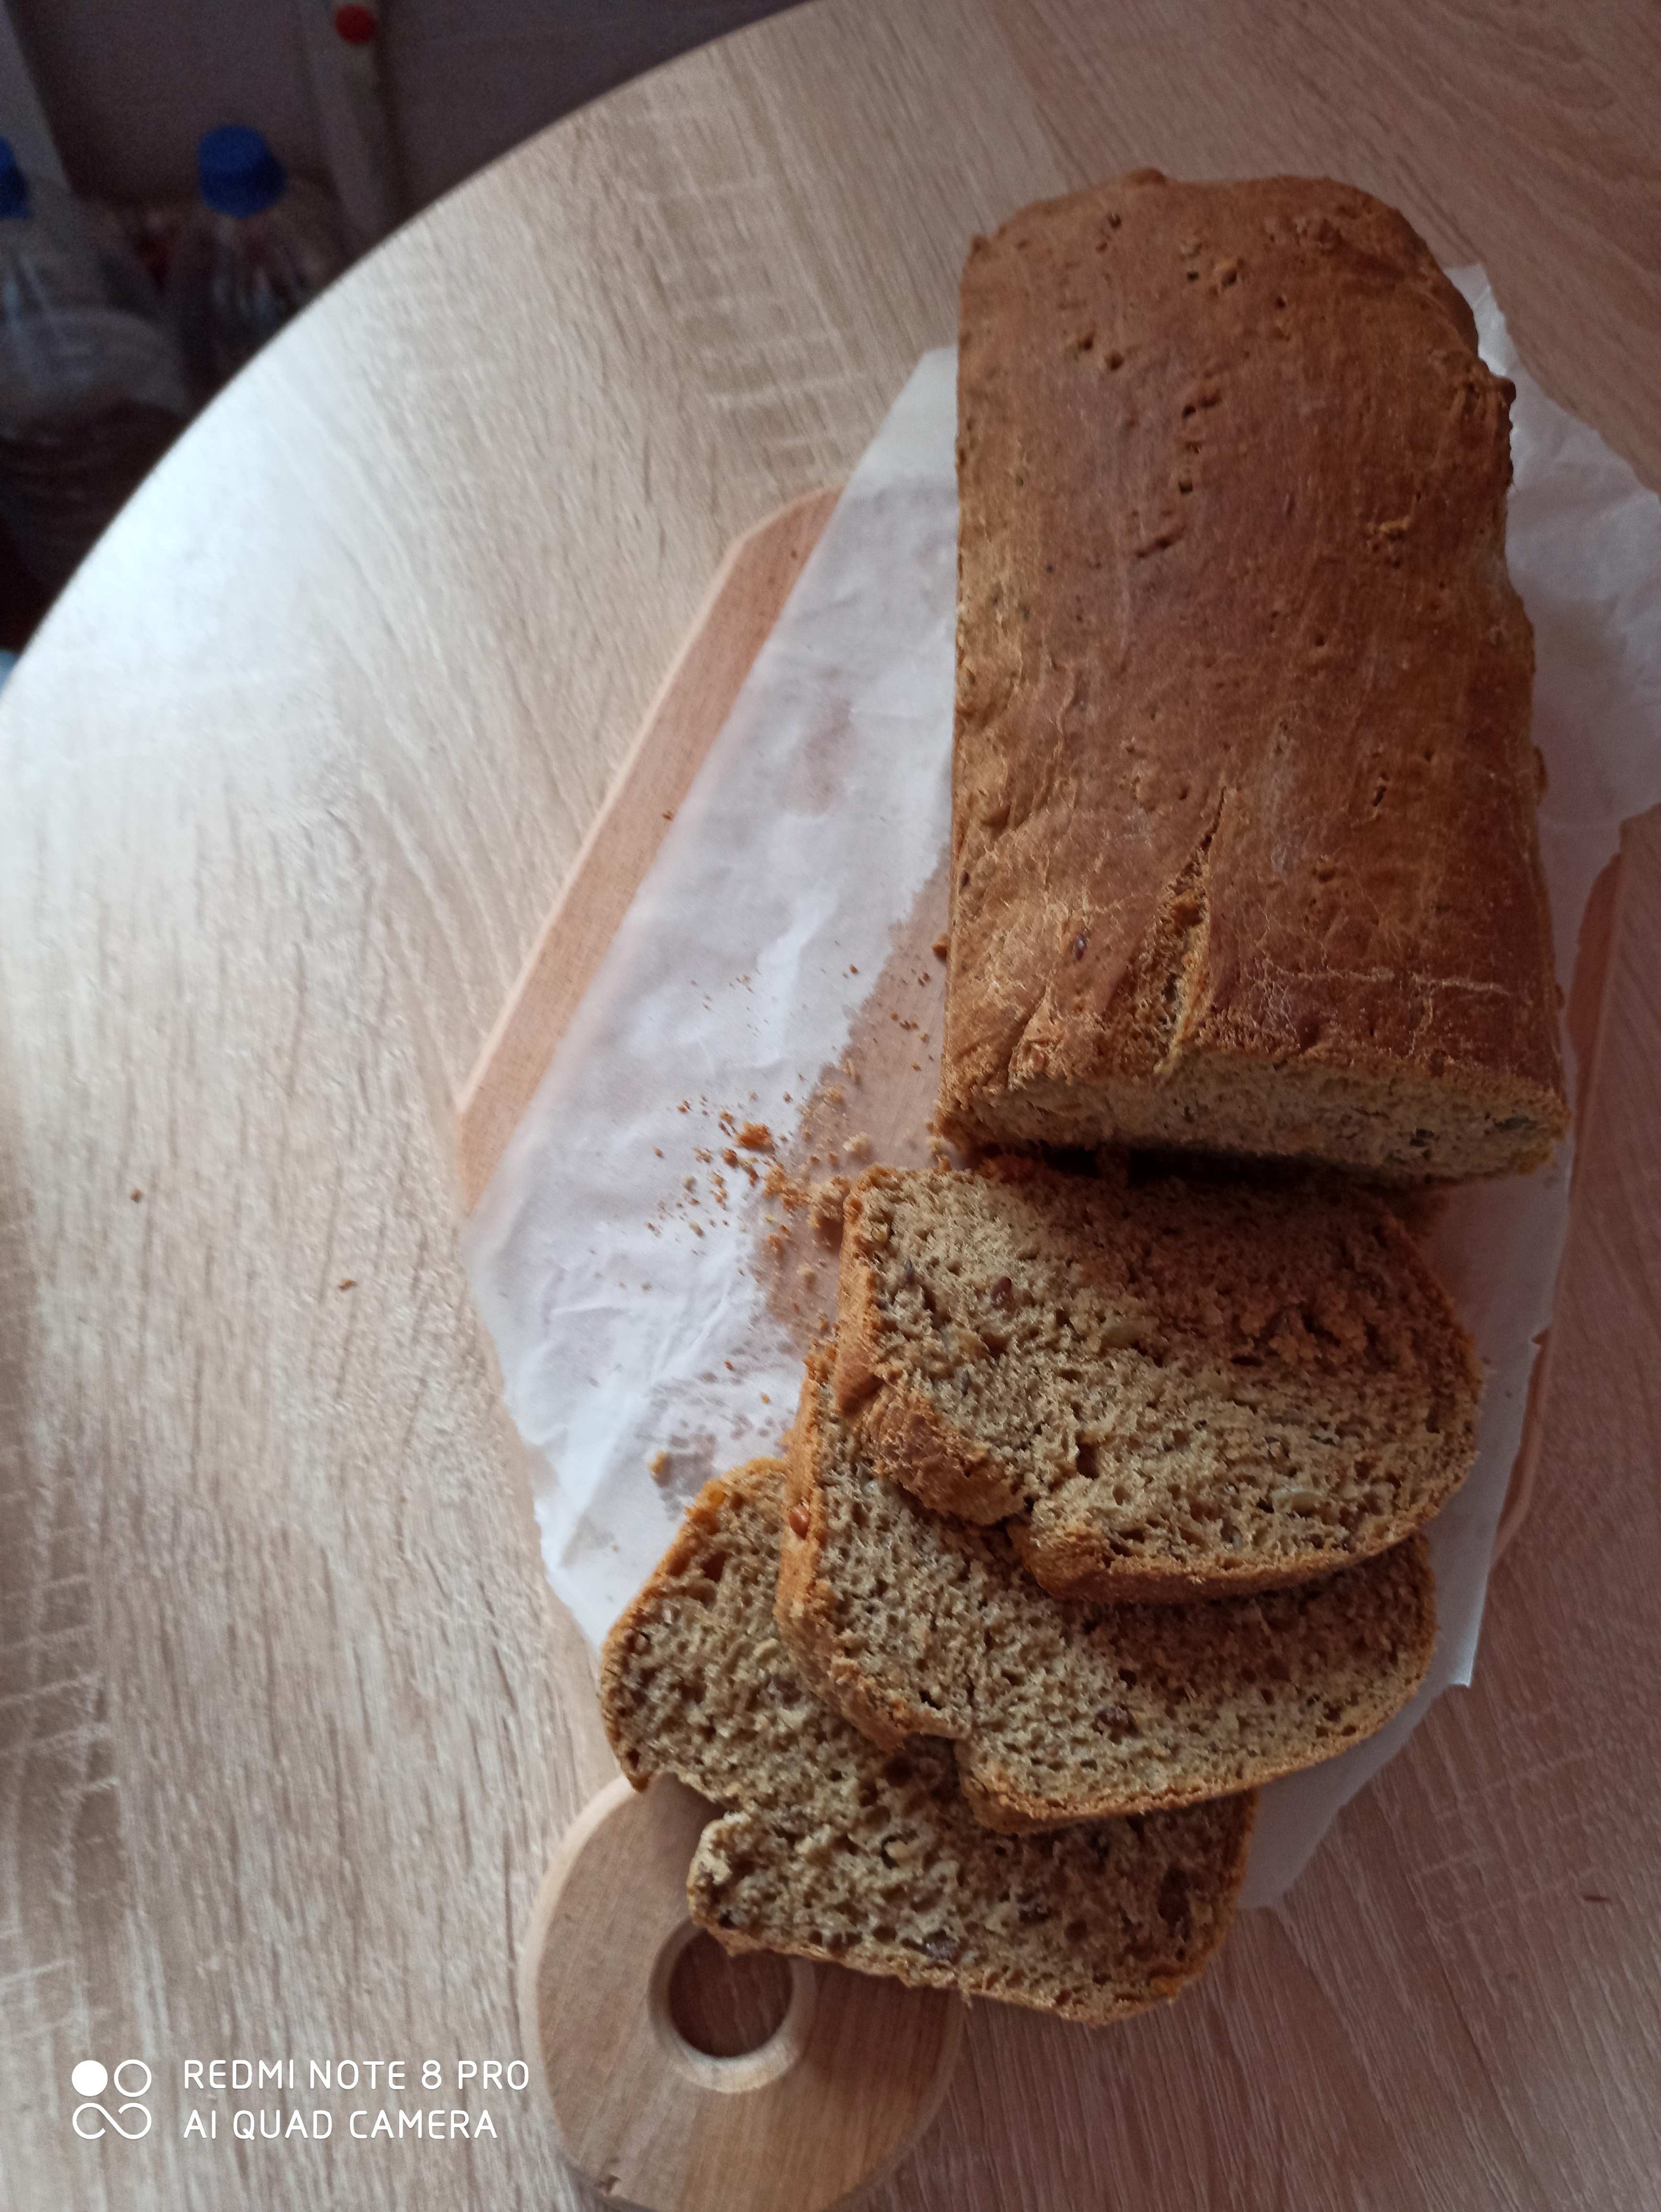 Рецепты ржаного хлеба в духовке